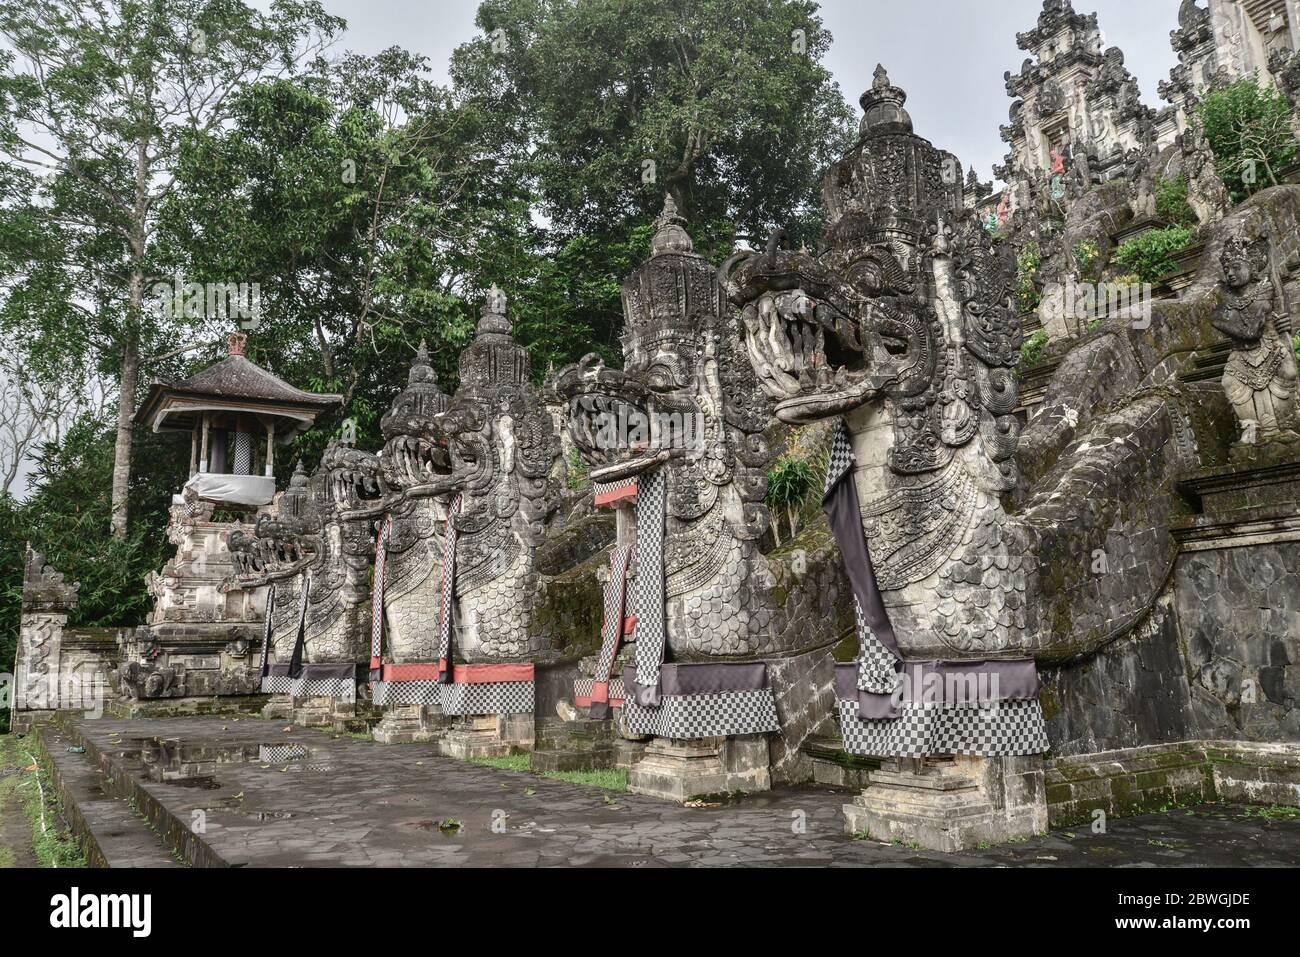 BALI, INDONESIEN - 12. JANUAR 2018: Touristen in der Nähe des Eingangs zum Pura Lempuyang Tempel auf Bali, Indonesien Stockfoto